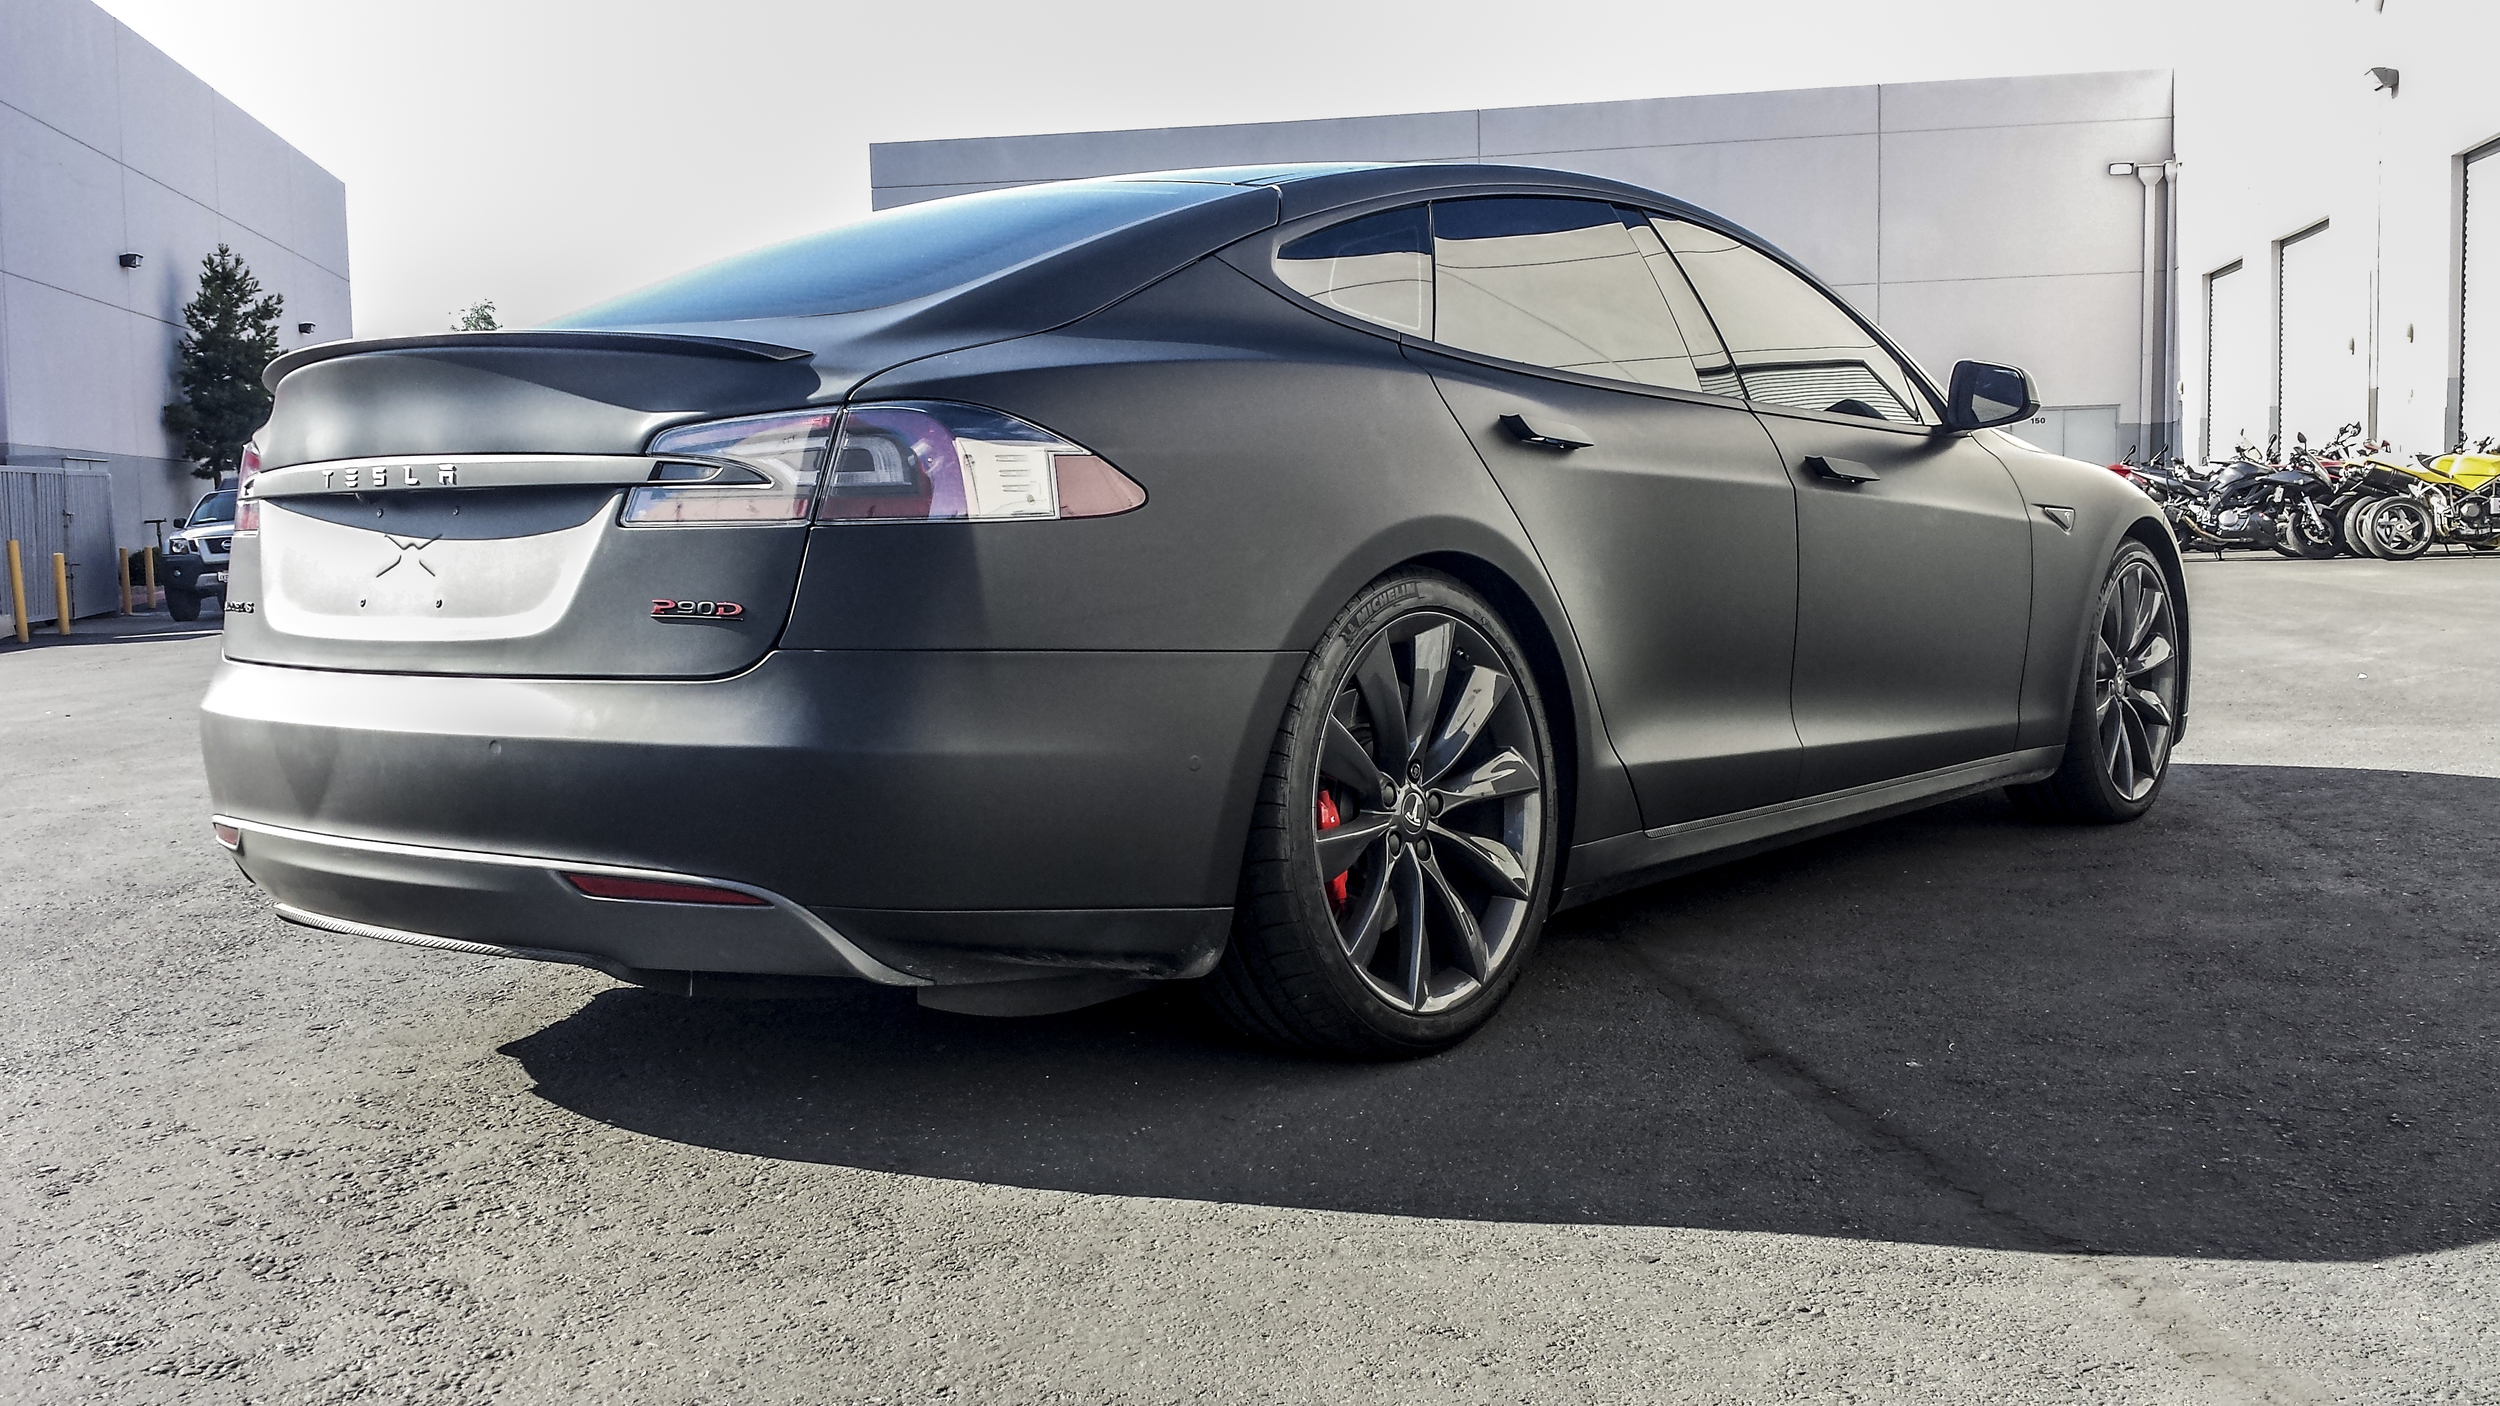 Tesla Model S - All Matte Black — Incognito Wraps